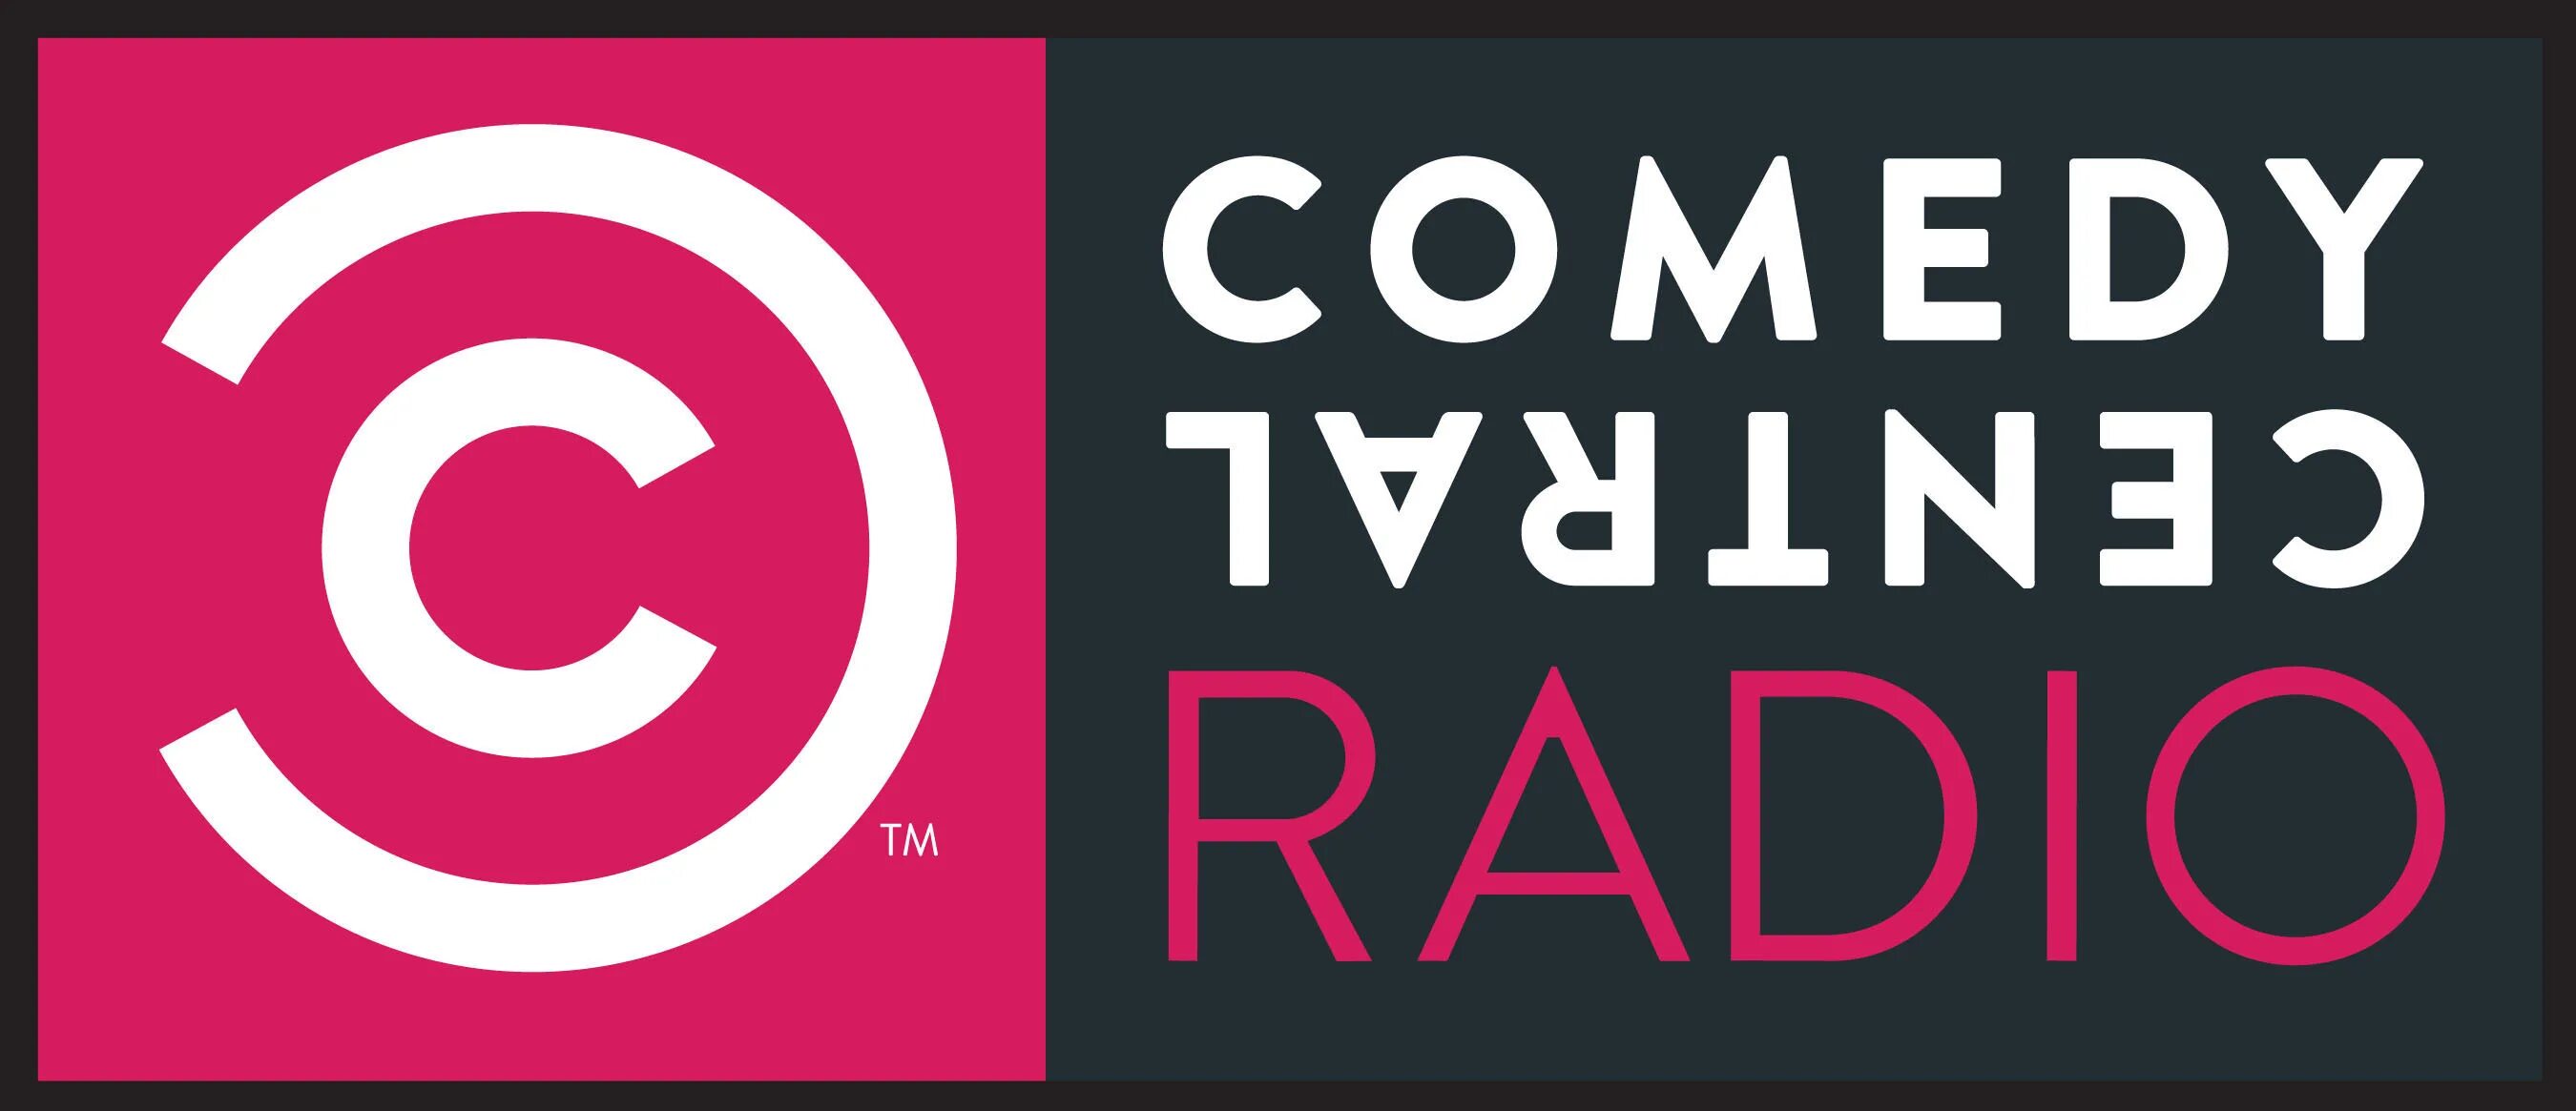 Камеди тв. Comedy TV лого. Телеканал камеди логотип. Comedy Radio. Comedy радио лого.